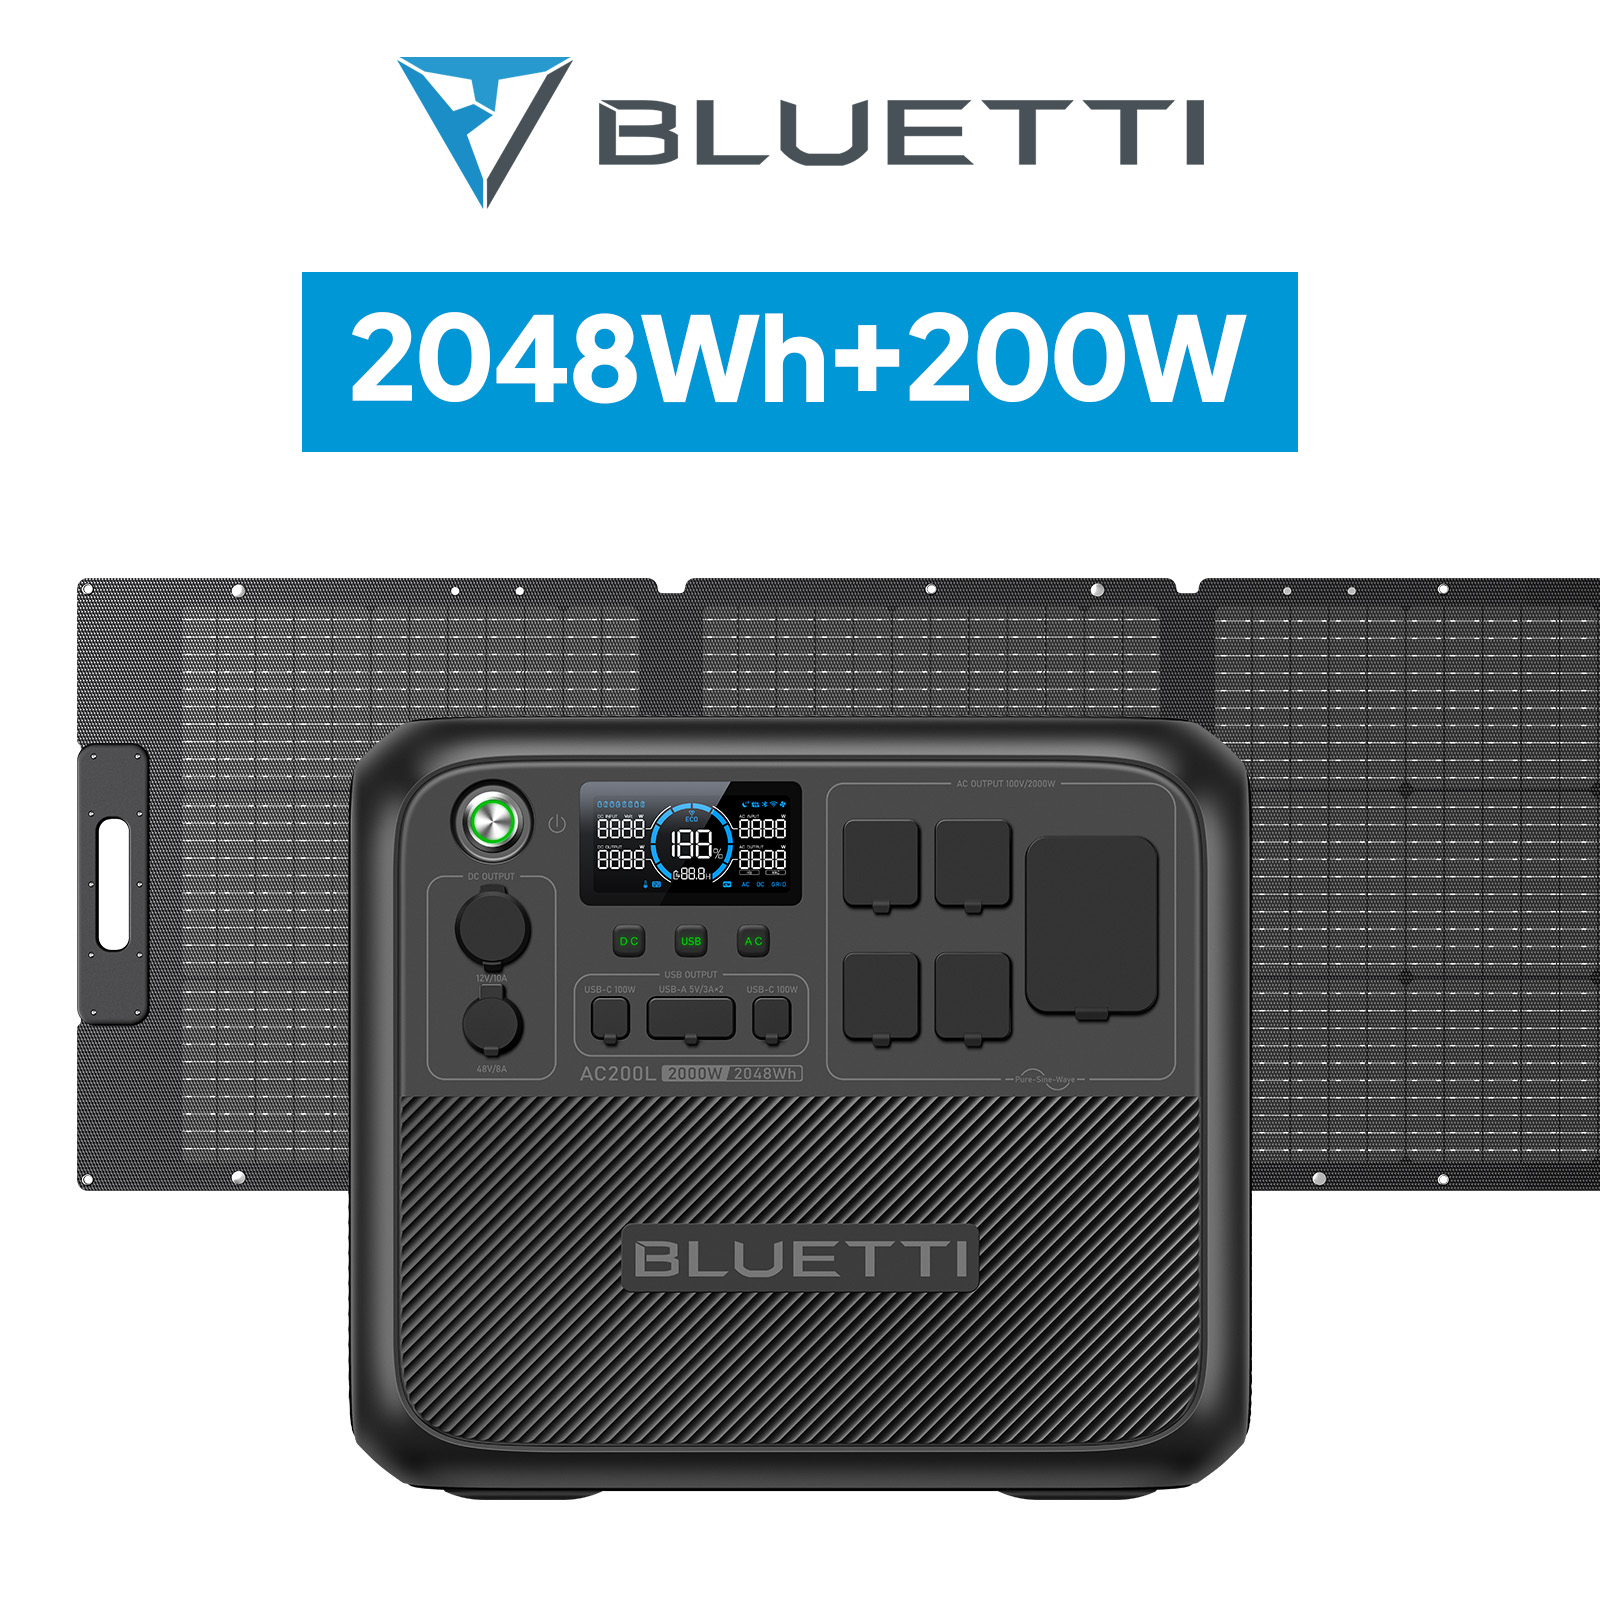 BLUETTI ポータブル電源 ソーラーパネル セット AC200L+200W 2048Wh+ 